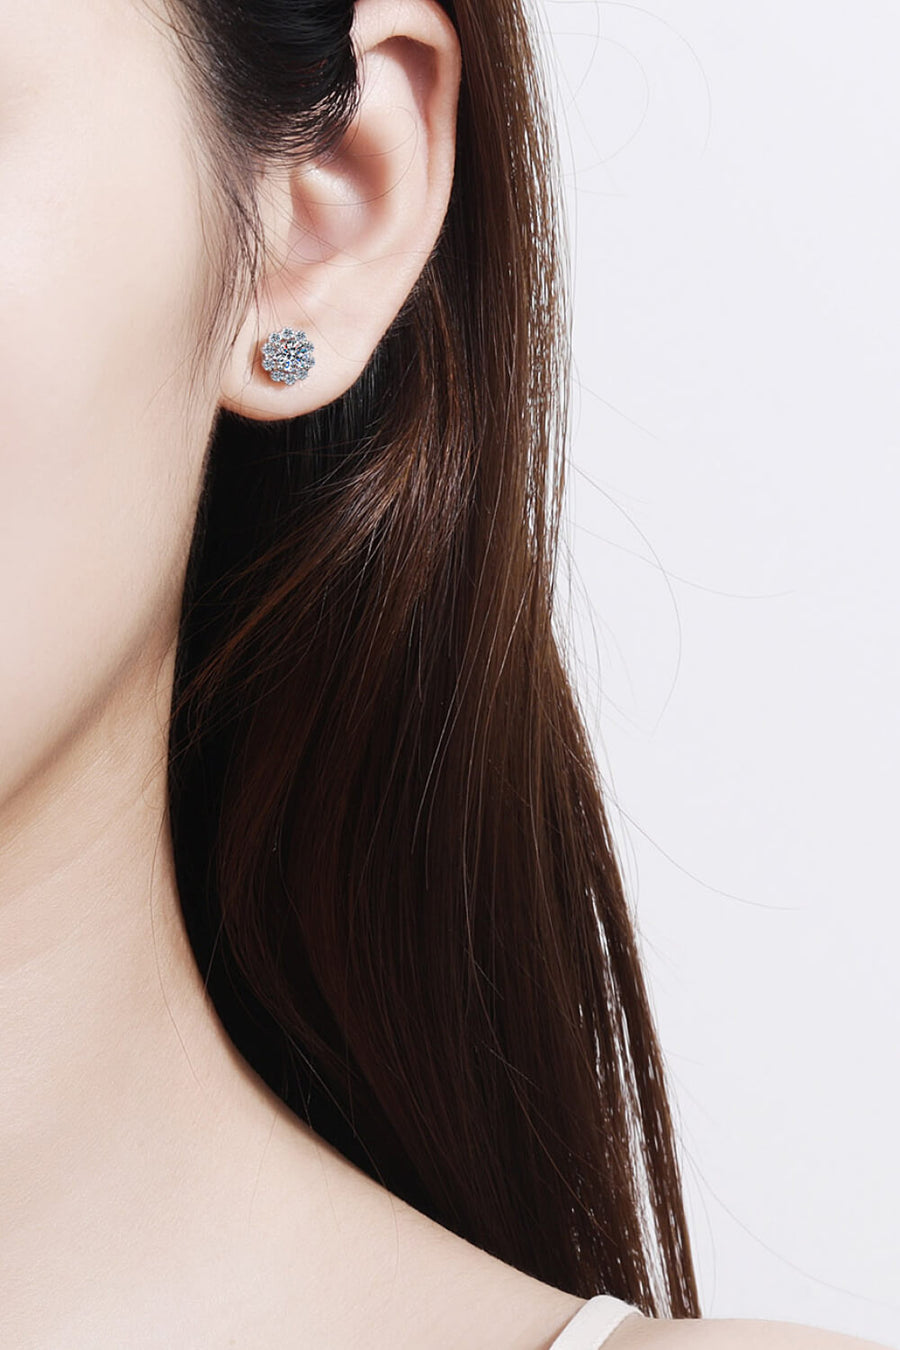 Best Diamond Earrings Jewelry Gifts for Women | 1 Carat Diamond Floral-Shaped Stud Earrings | MASON New York